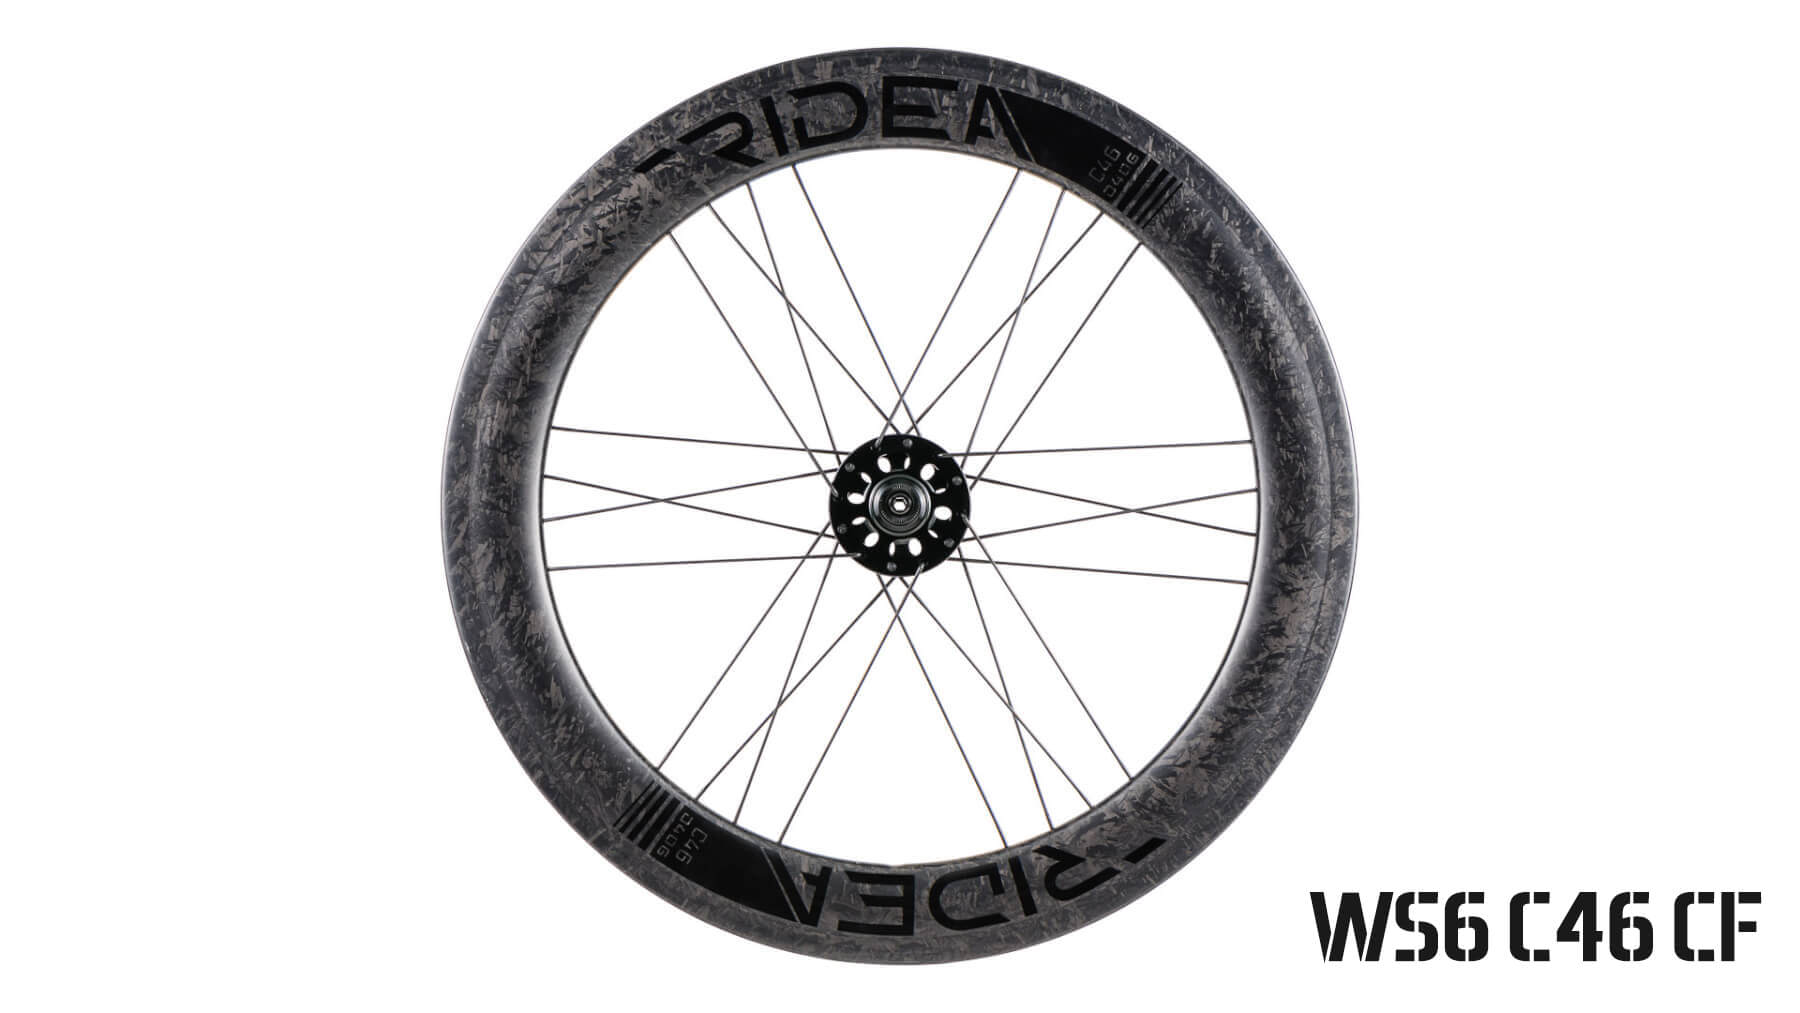 406 mm carbon wheels (Dahon)